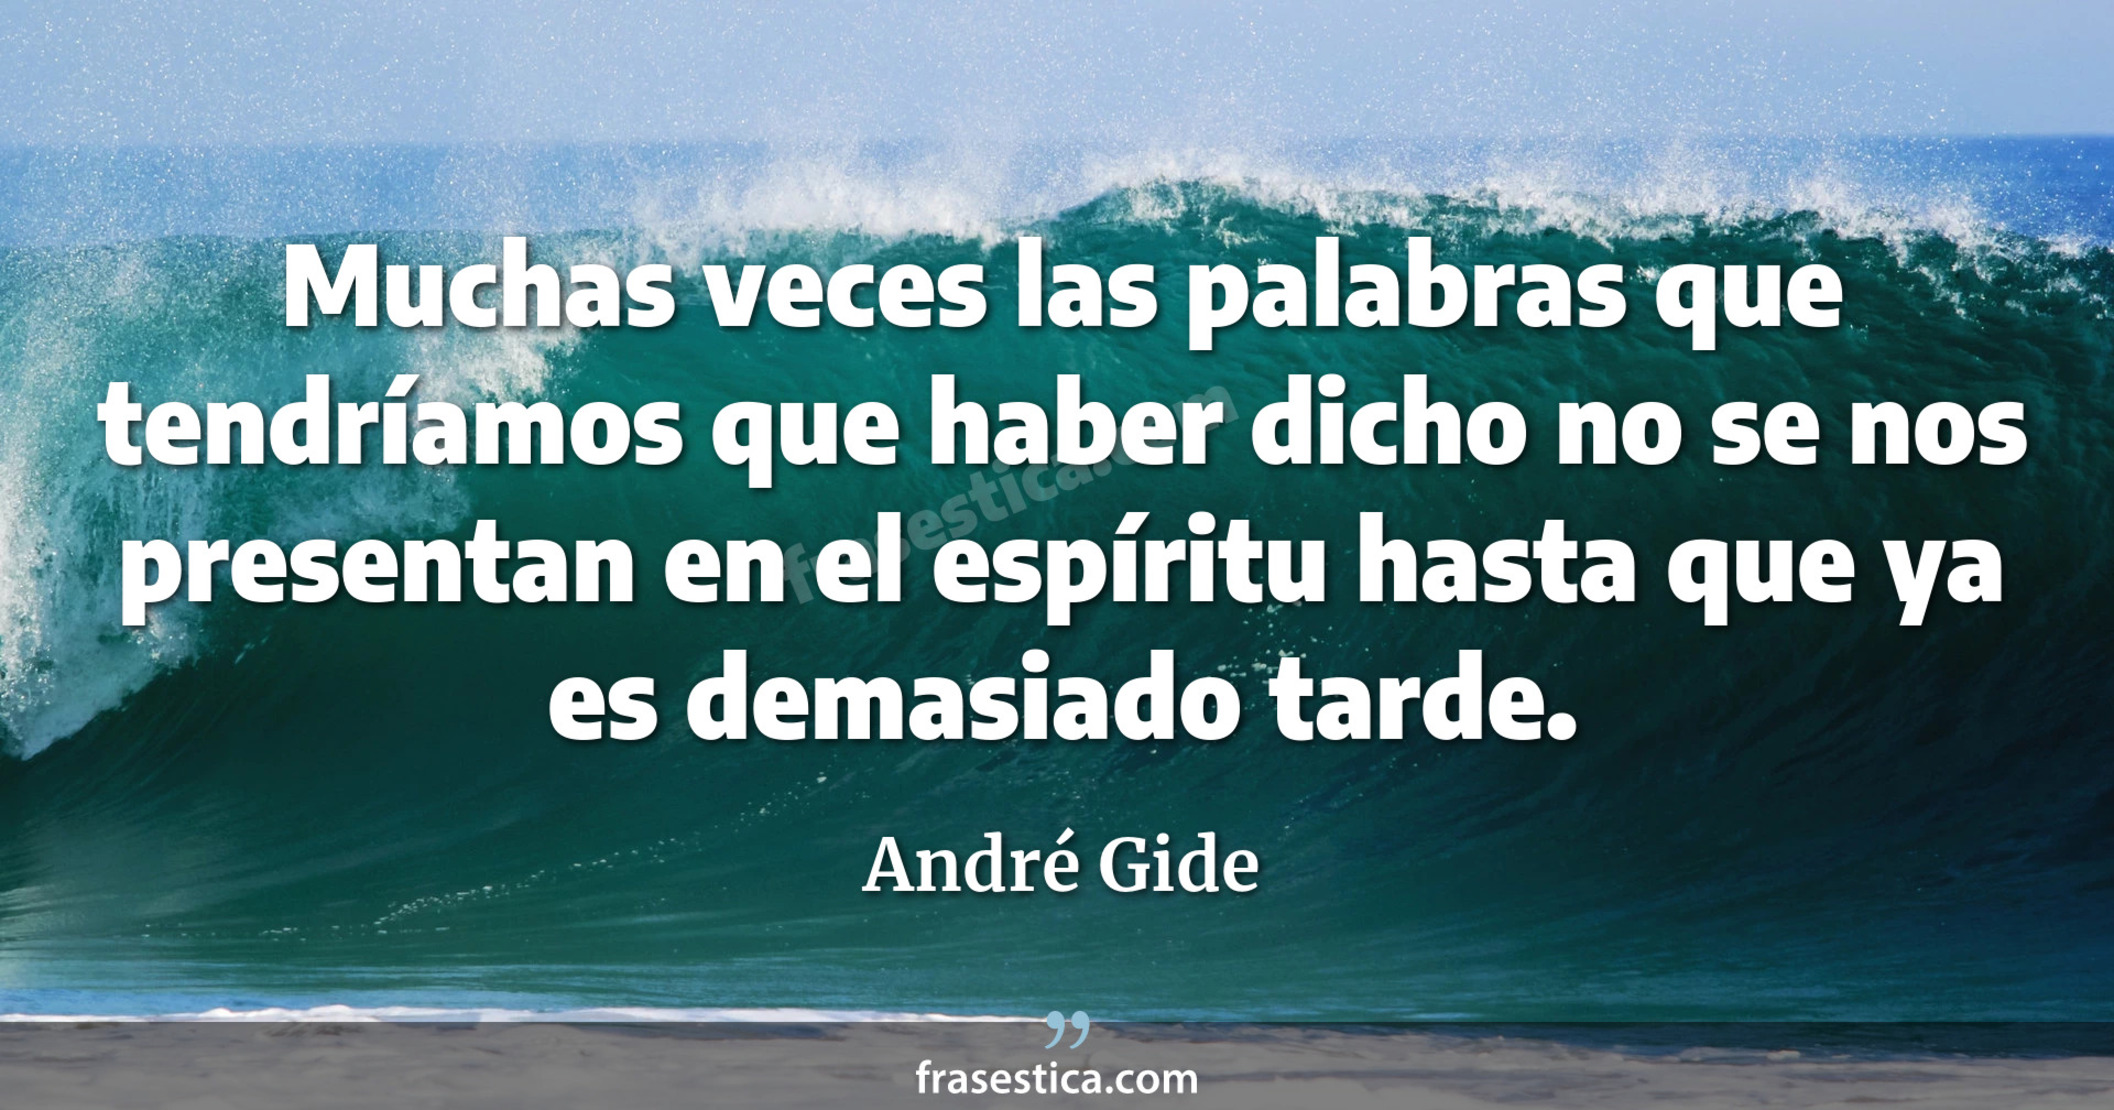 Muchas veces las palabras que tendríamos que haber dicho no se nos presentan en el espíritu hasta que ya es demasiado tarde. - André Gide